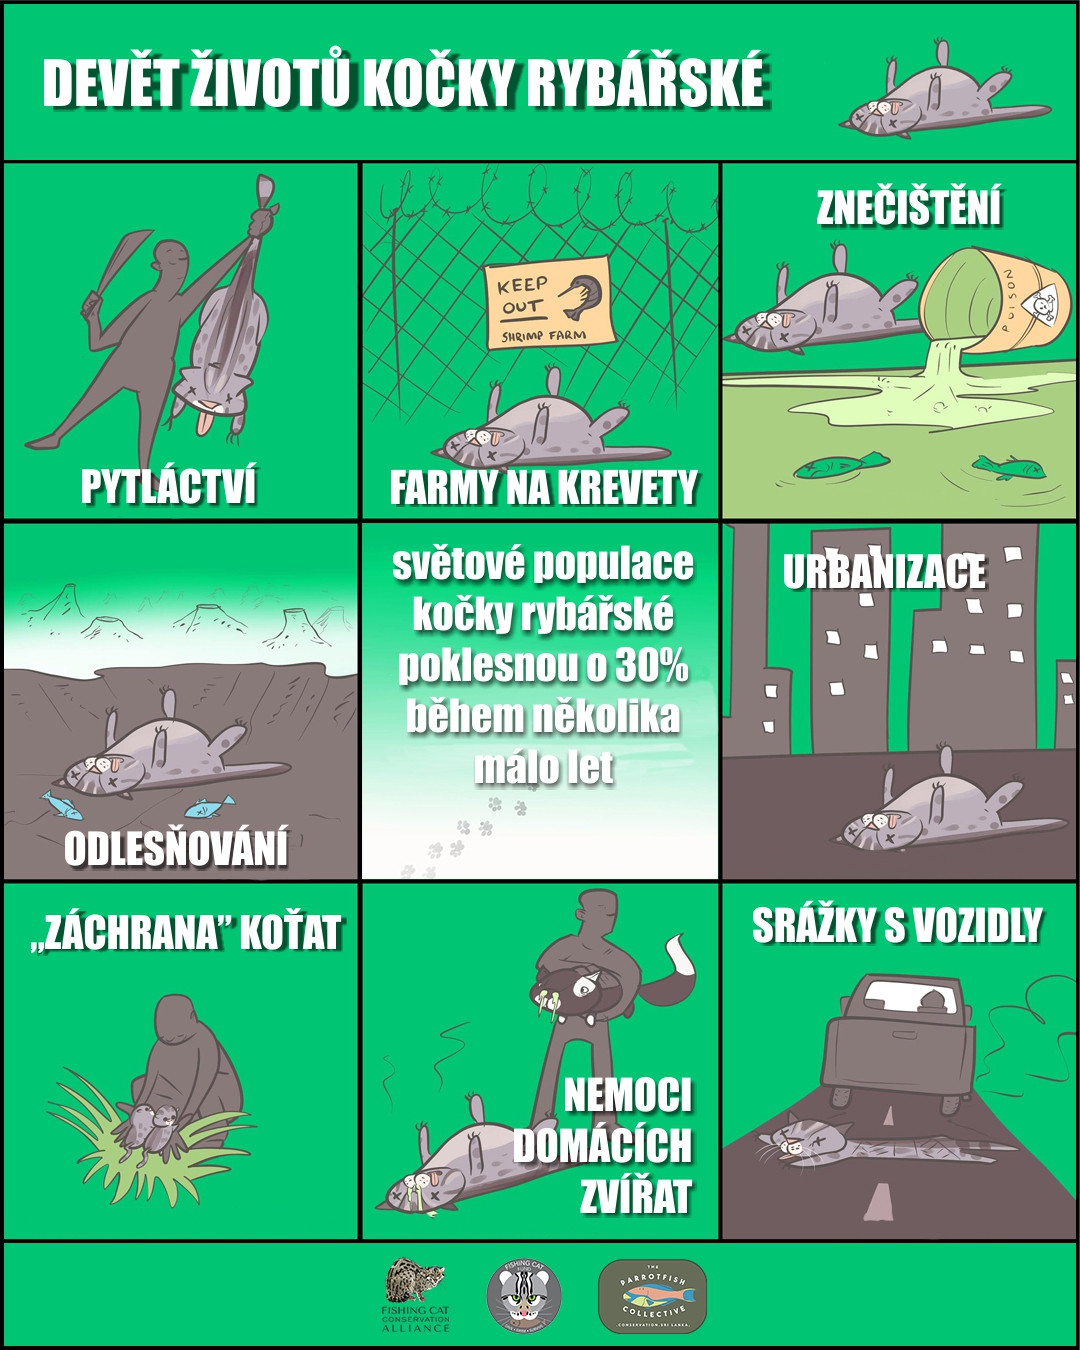 9 životů kočky rybářské.jpg